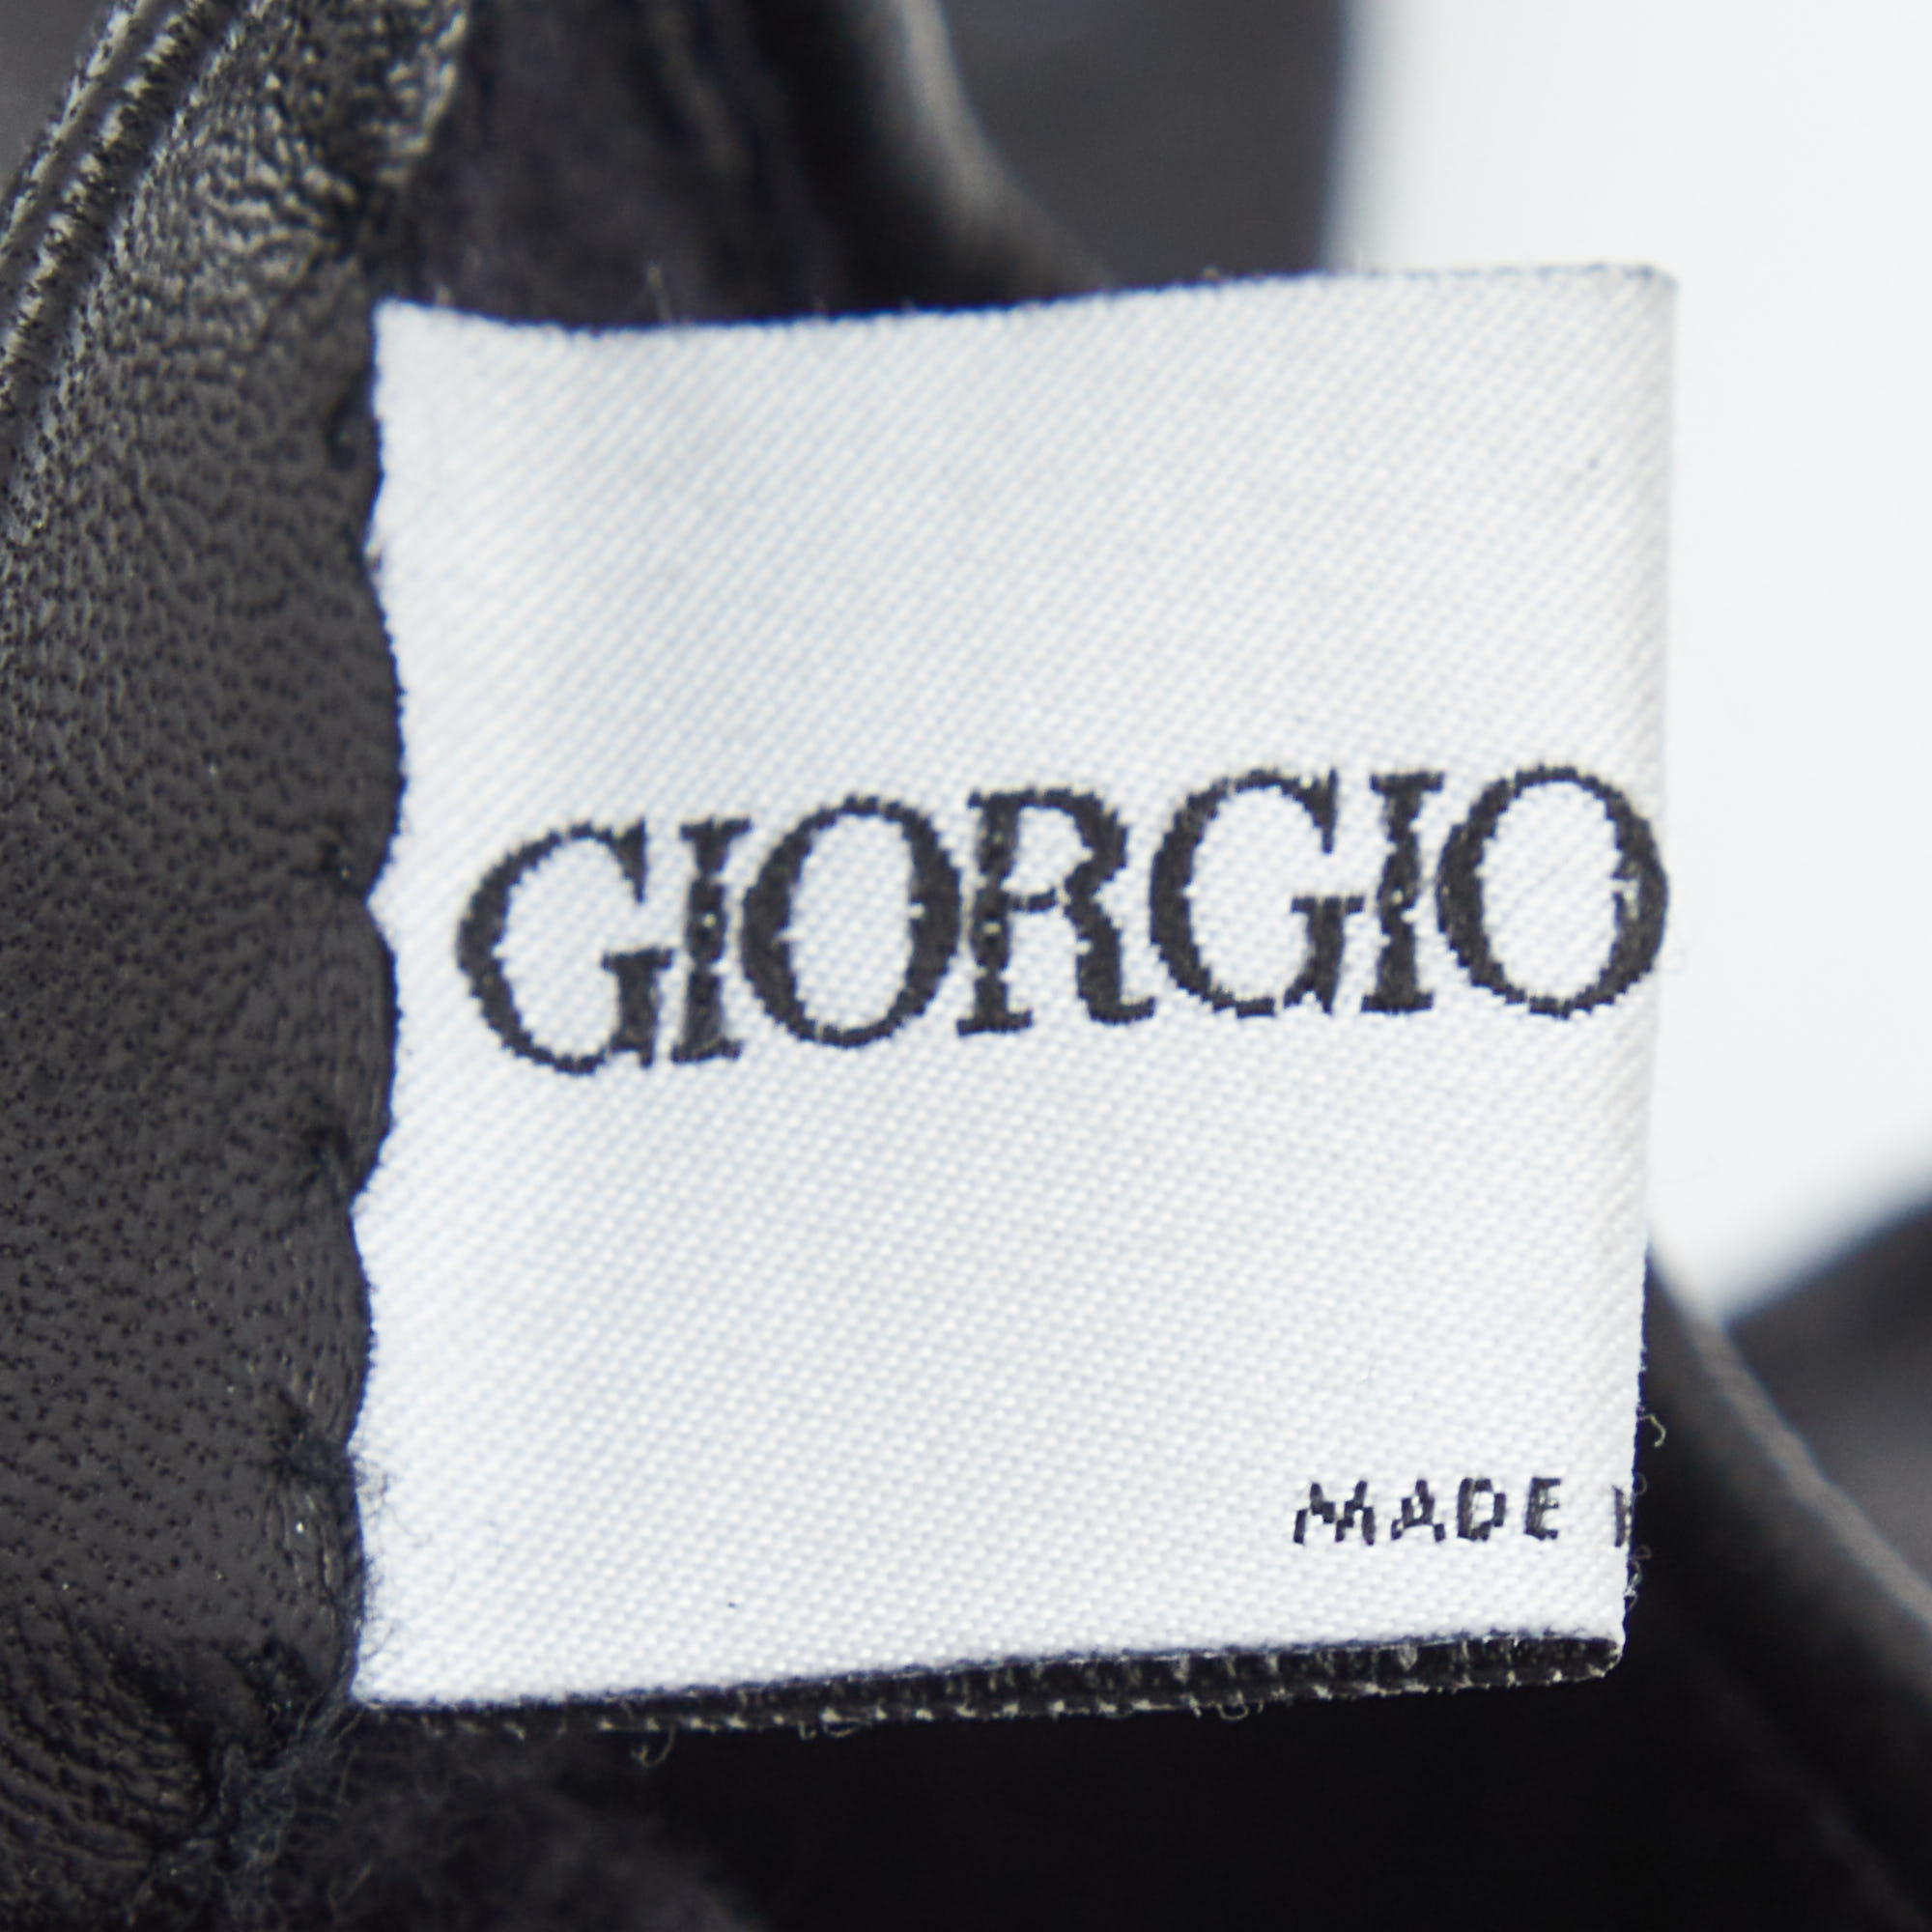 Giorgio Armani Black Leather Stitch Detail Gloves L